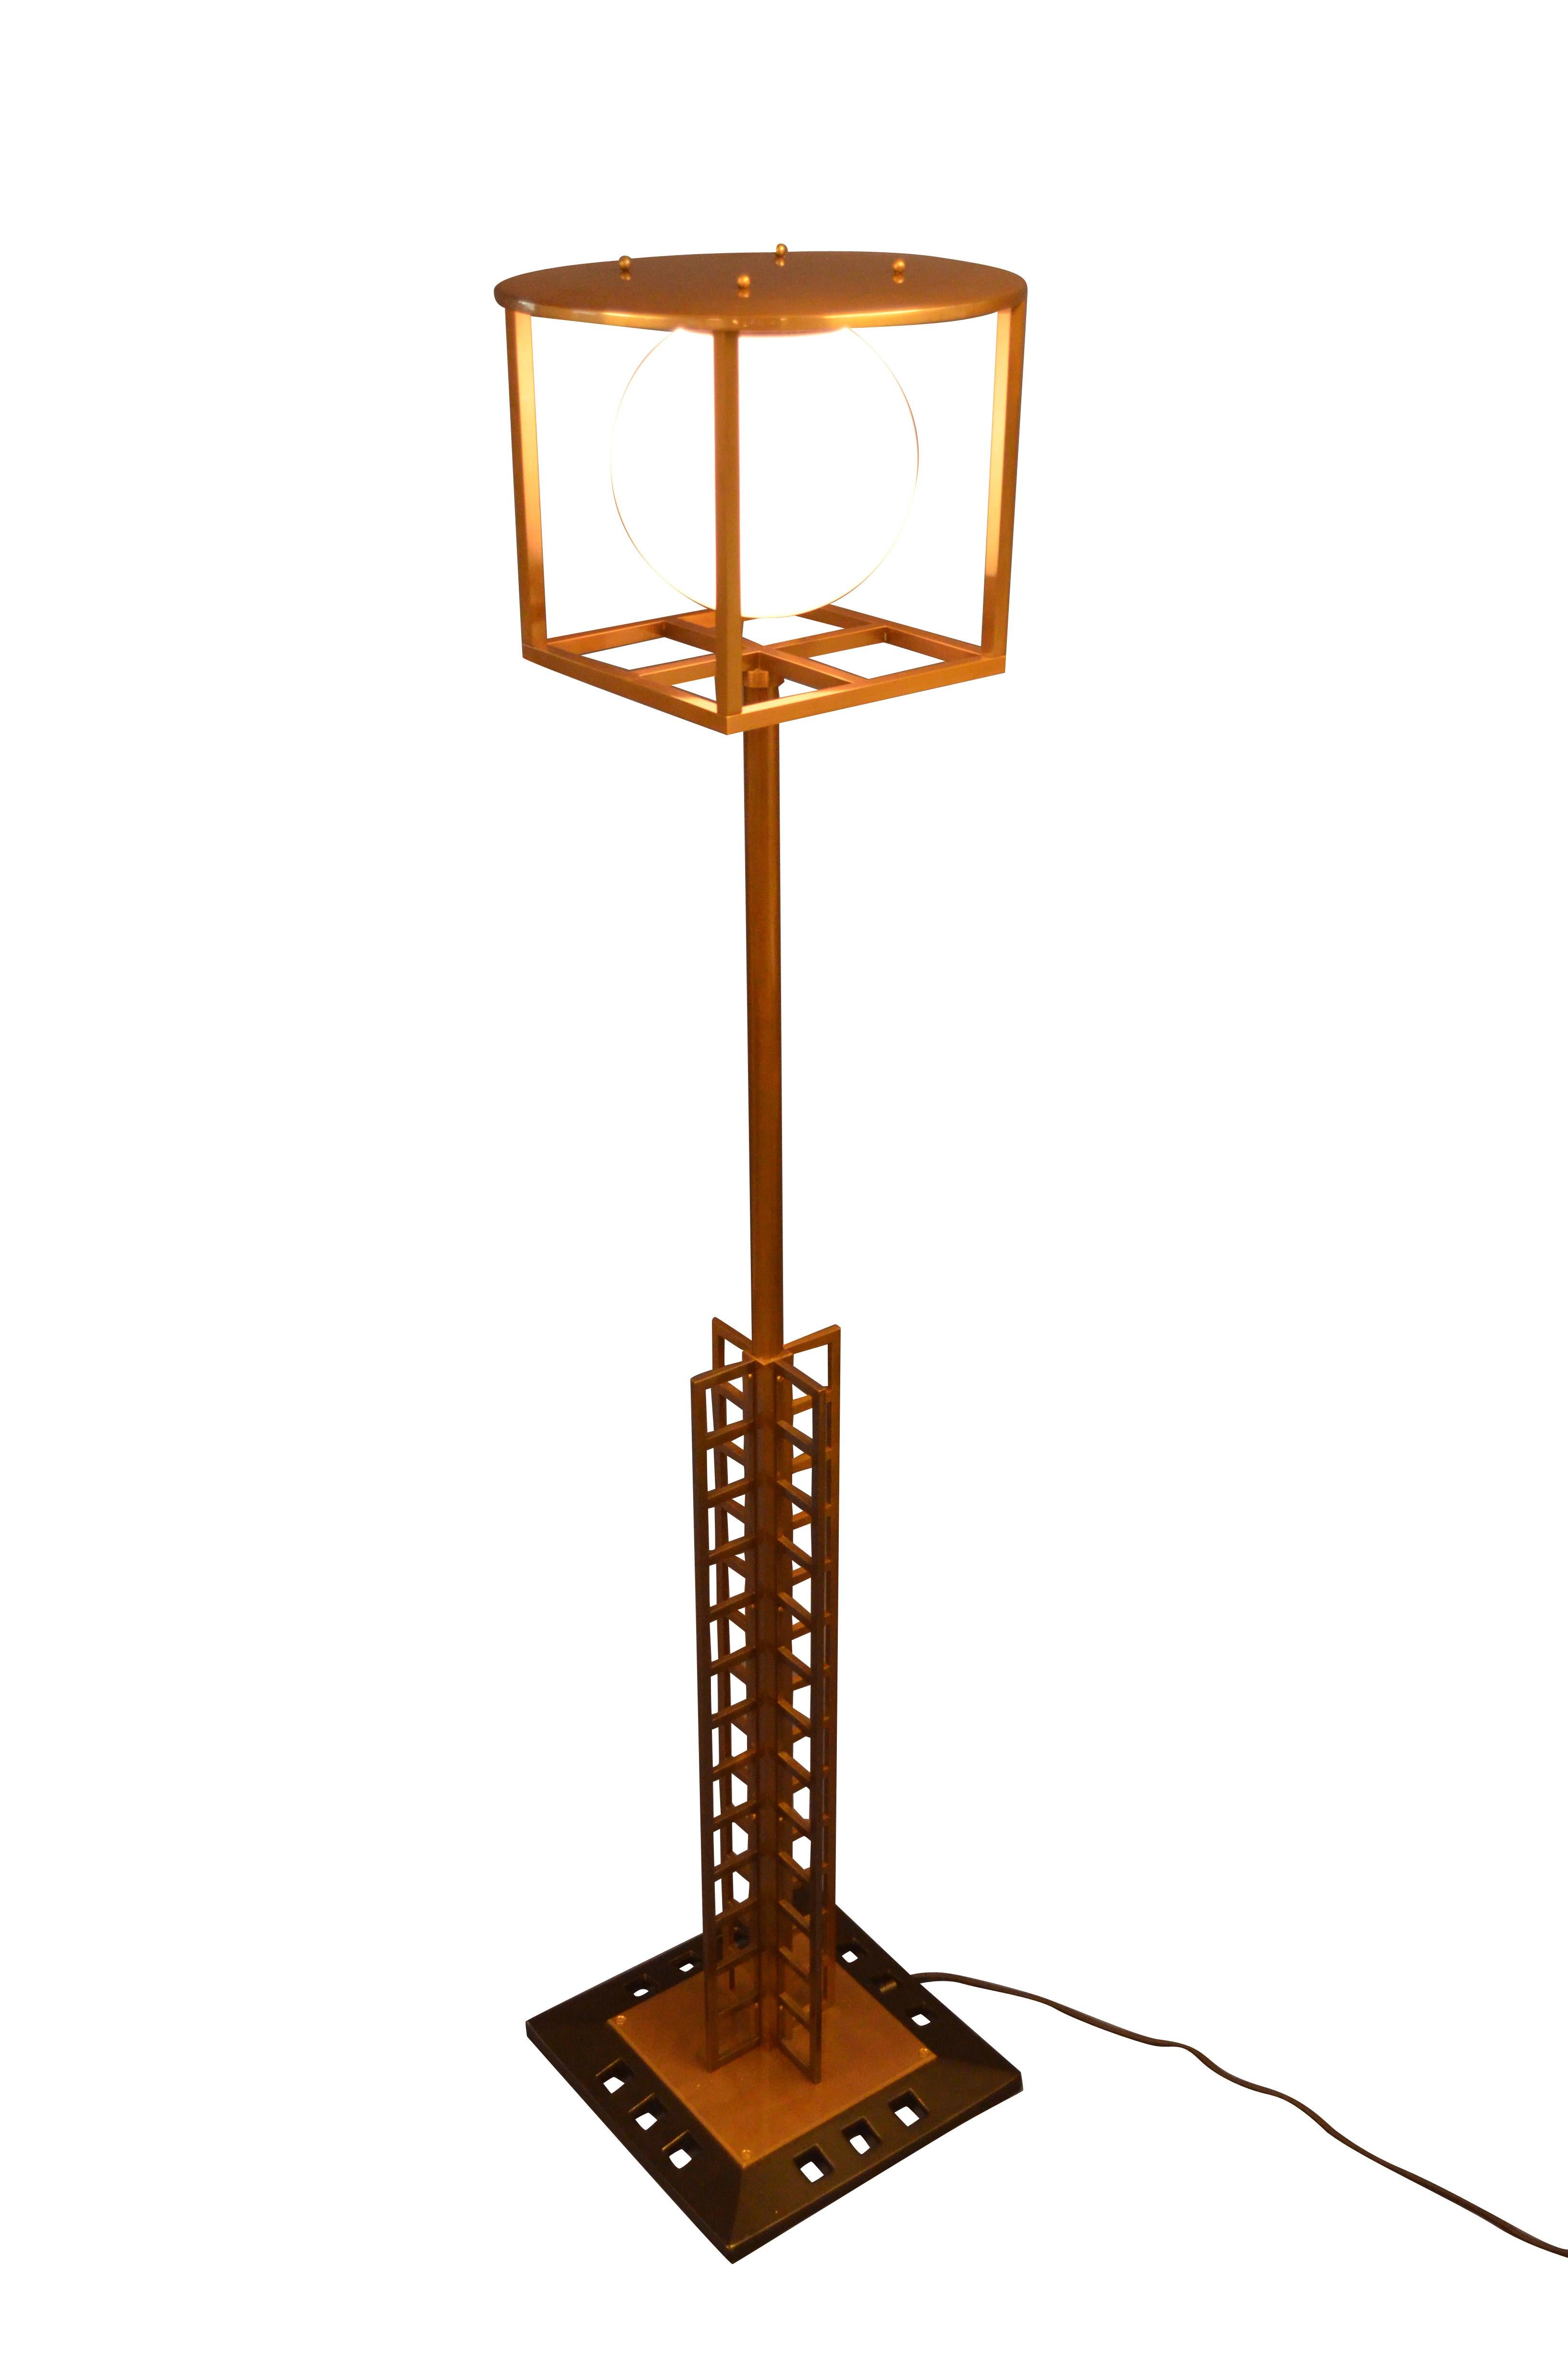 Originally designed as a street lamp for the 